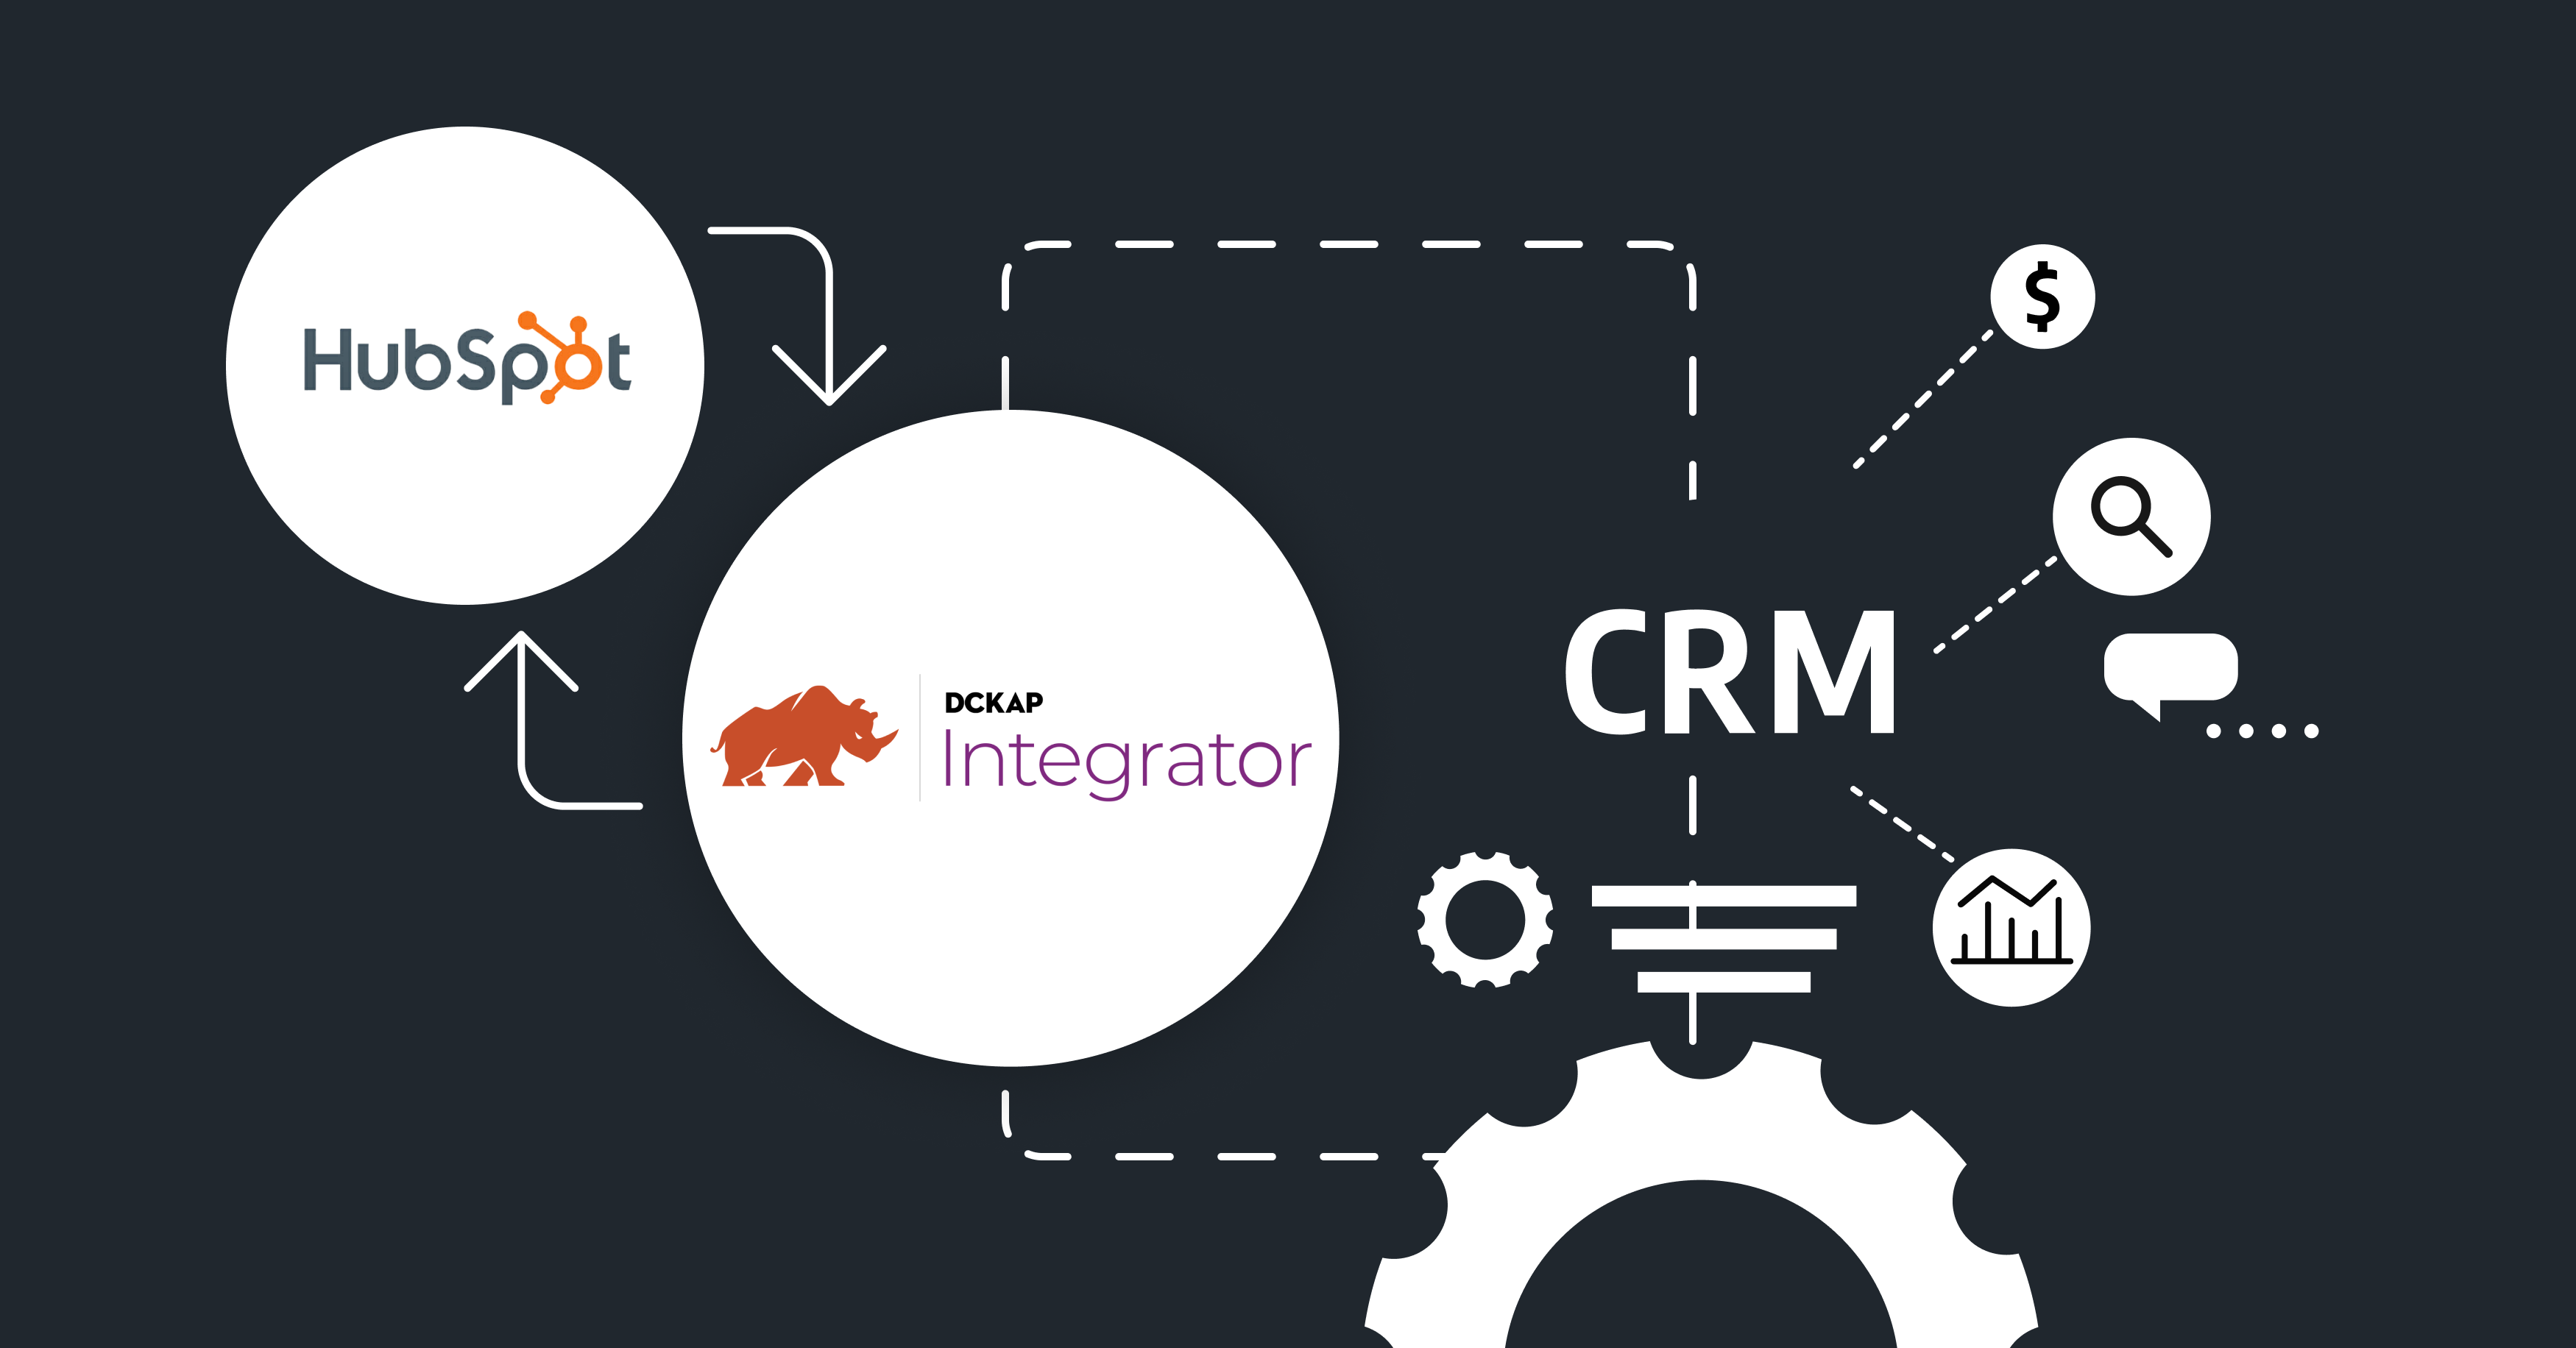 HubSpot CRM Integration - DCKAP Integrator